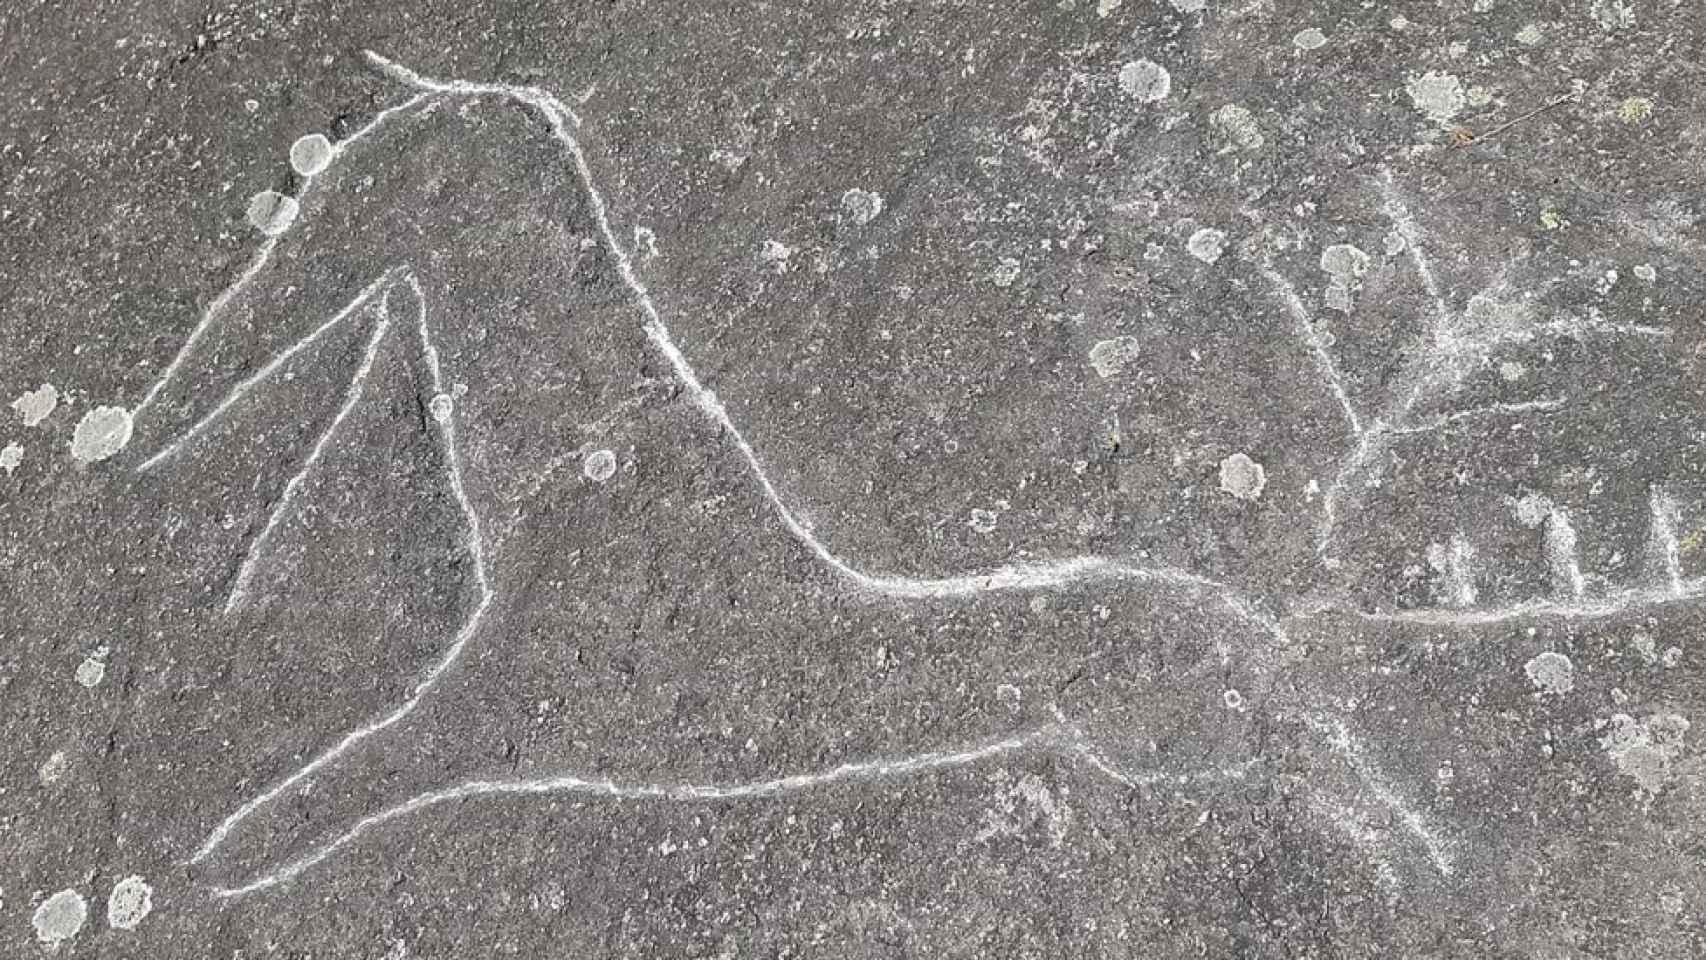 Los petroglifos de Campo Lameiro (Pontevedra) aparecen dañados por vándalos